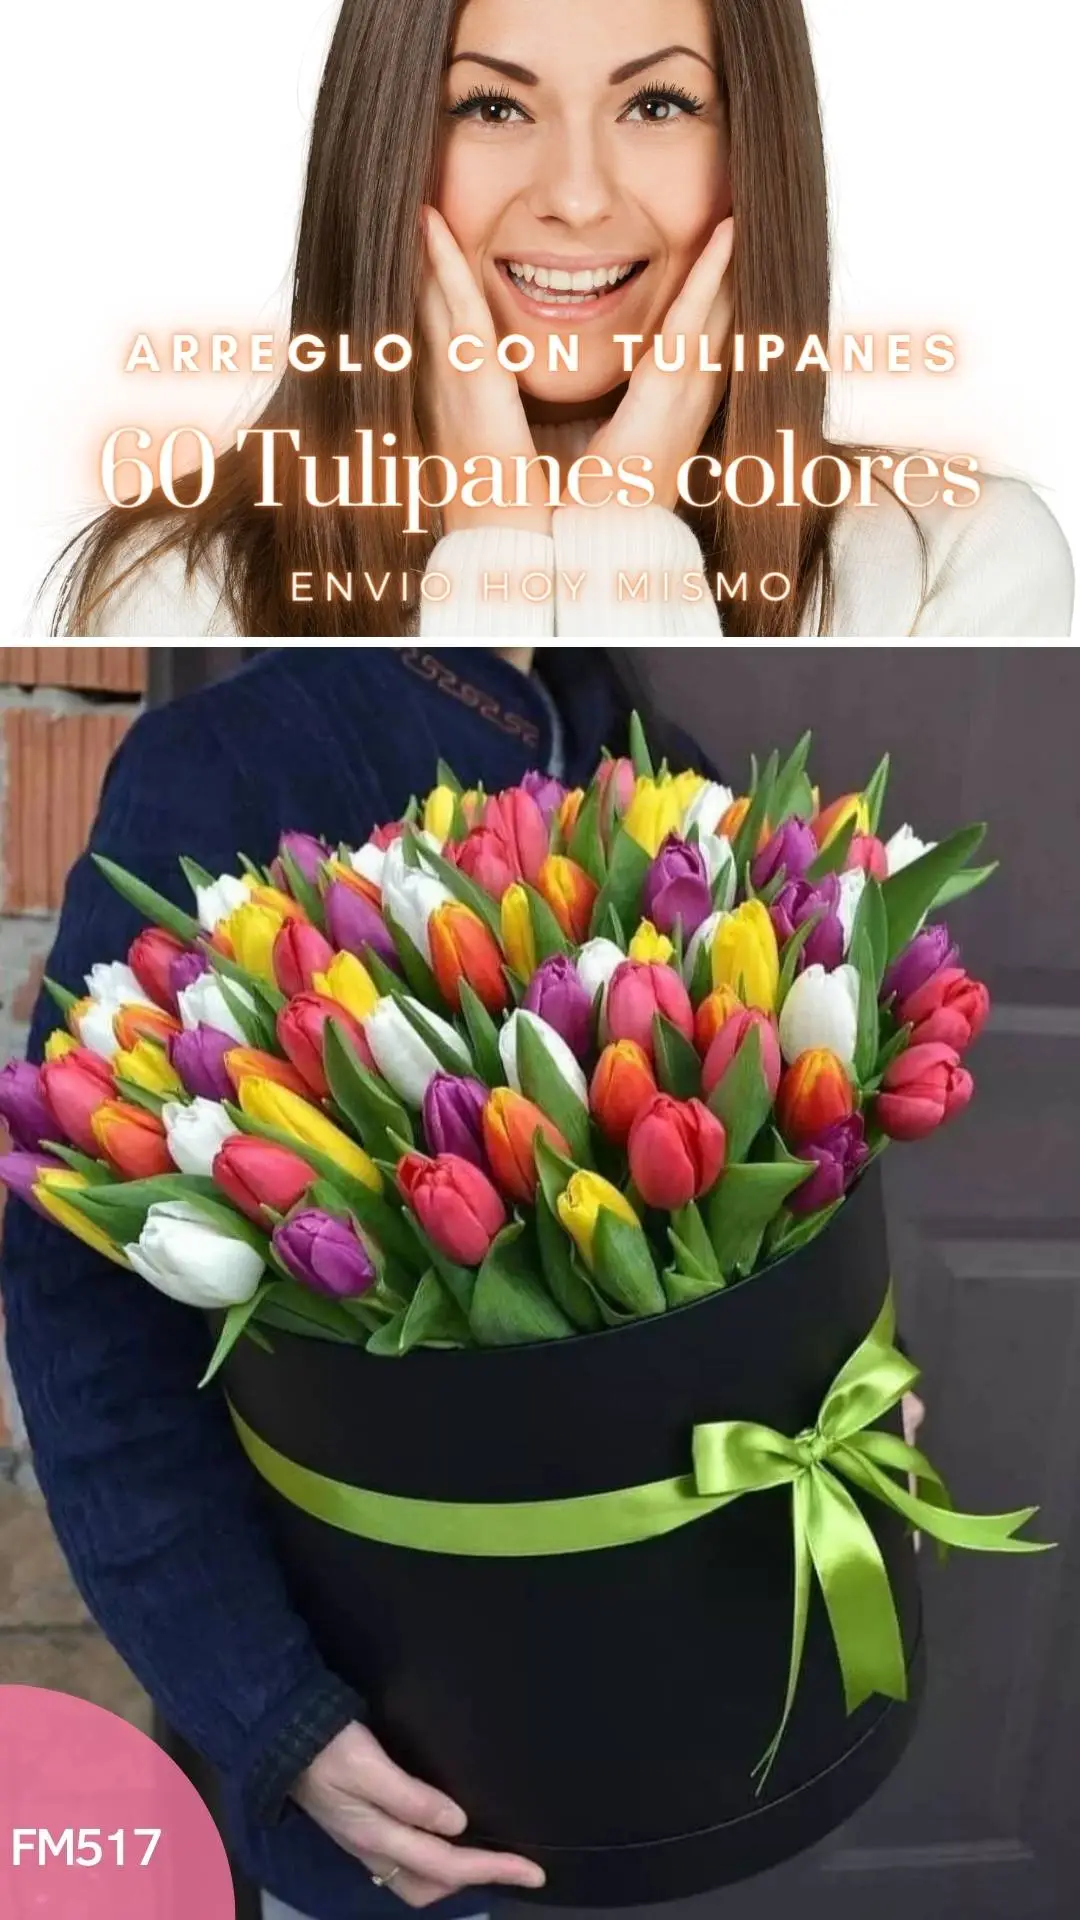 Caja con 60 tulipanes mi regalo